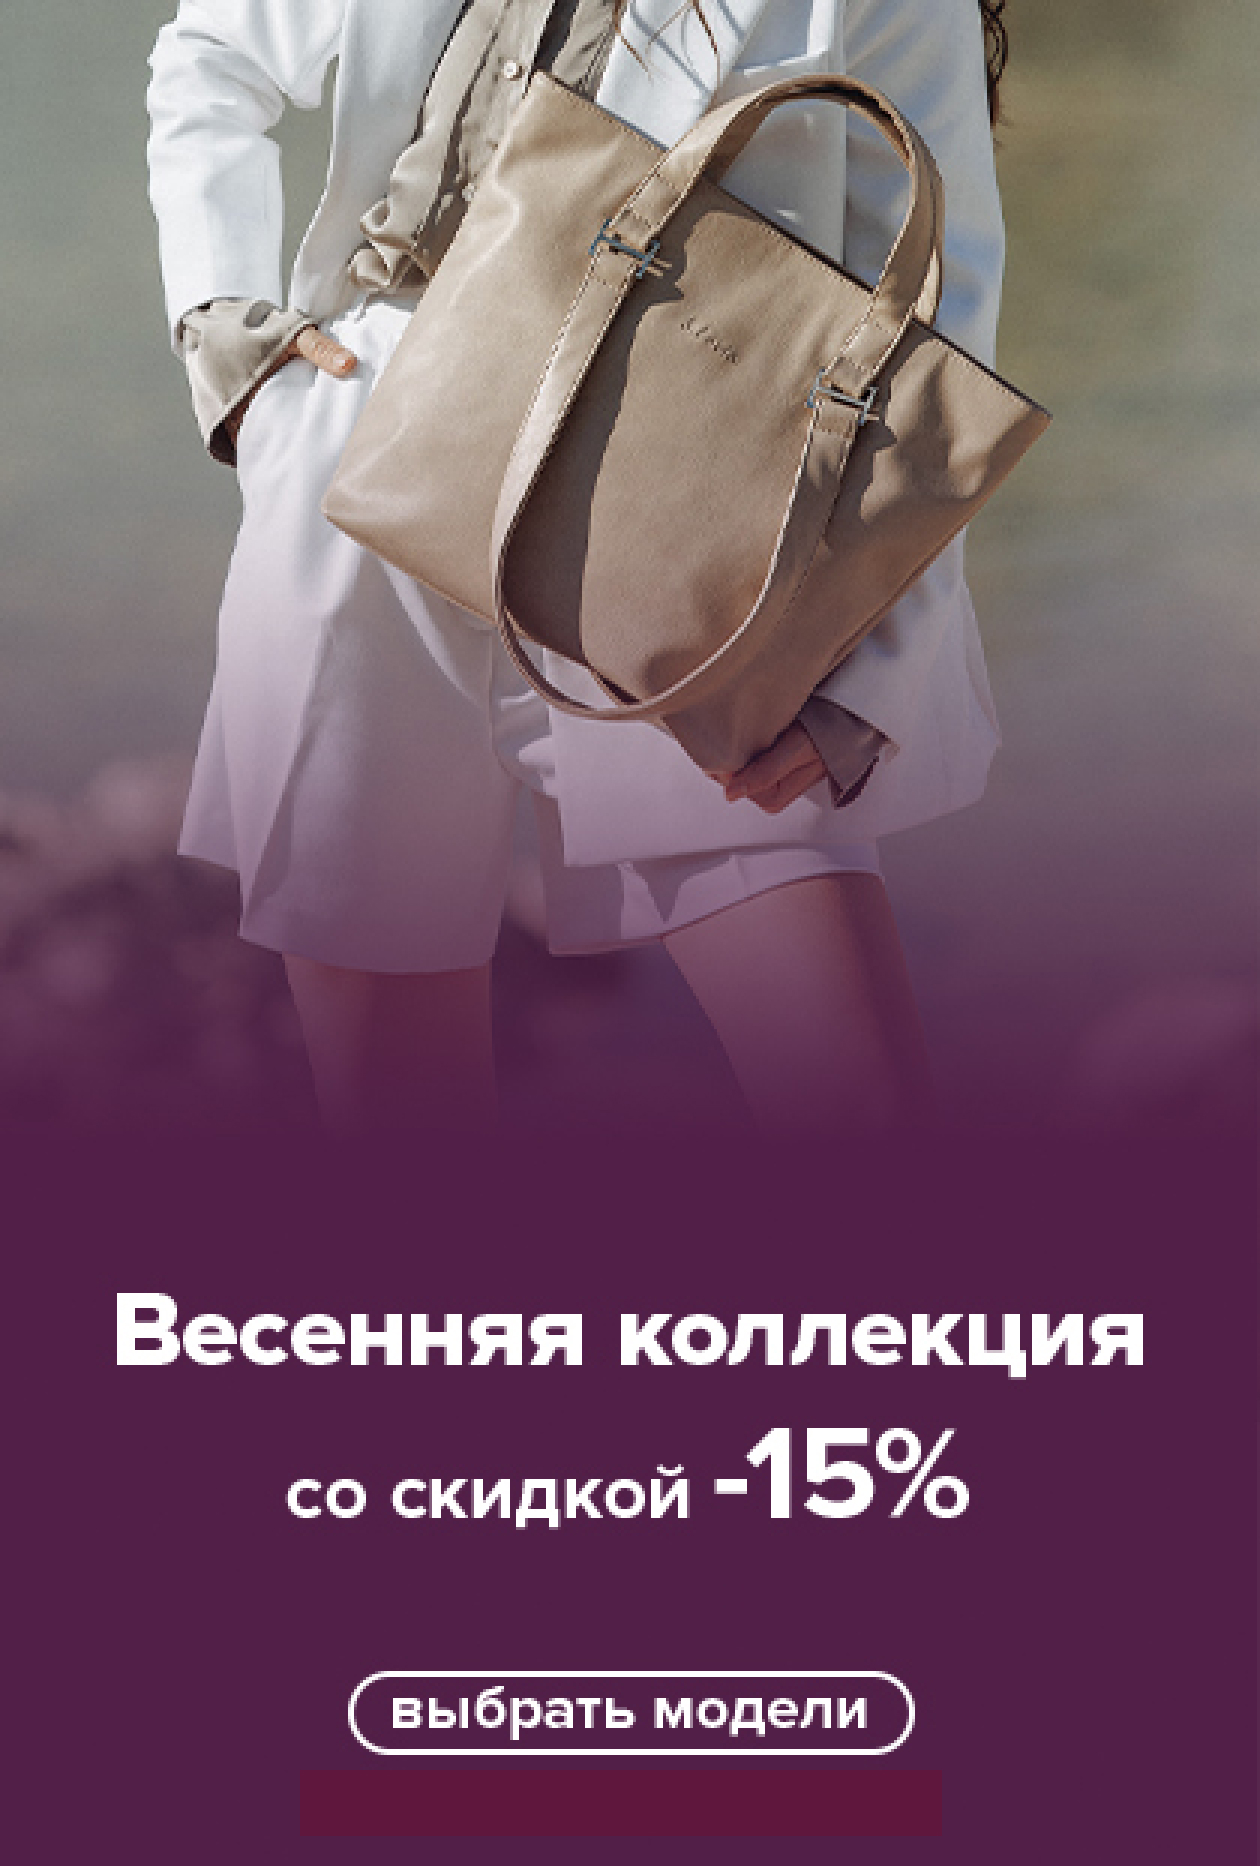 Купить сумки женские натуральная кожа оптом в интернет-магазине конференц-зал-самара.рф, Екатеринбург